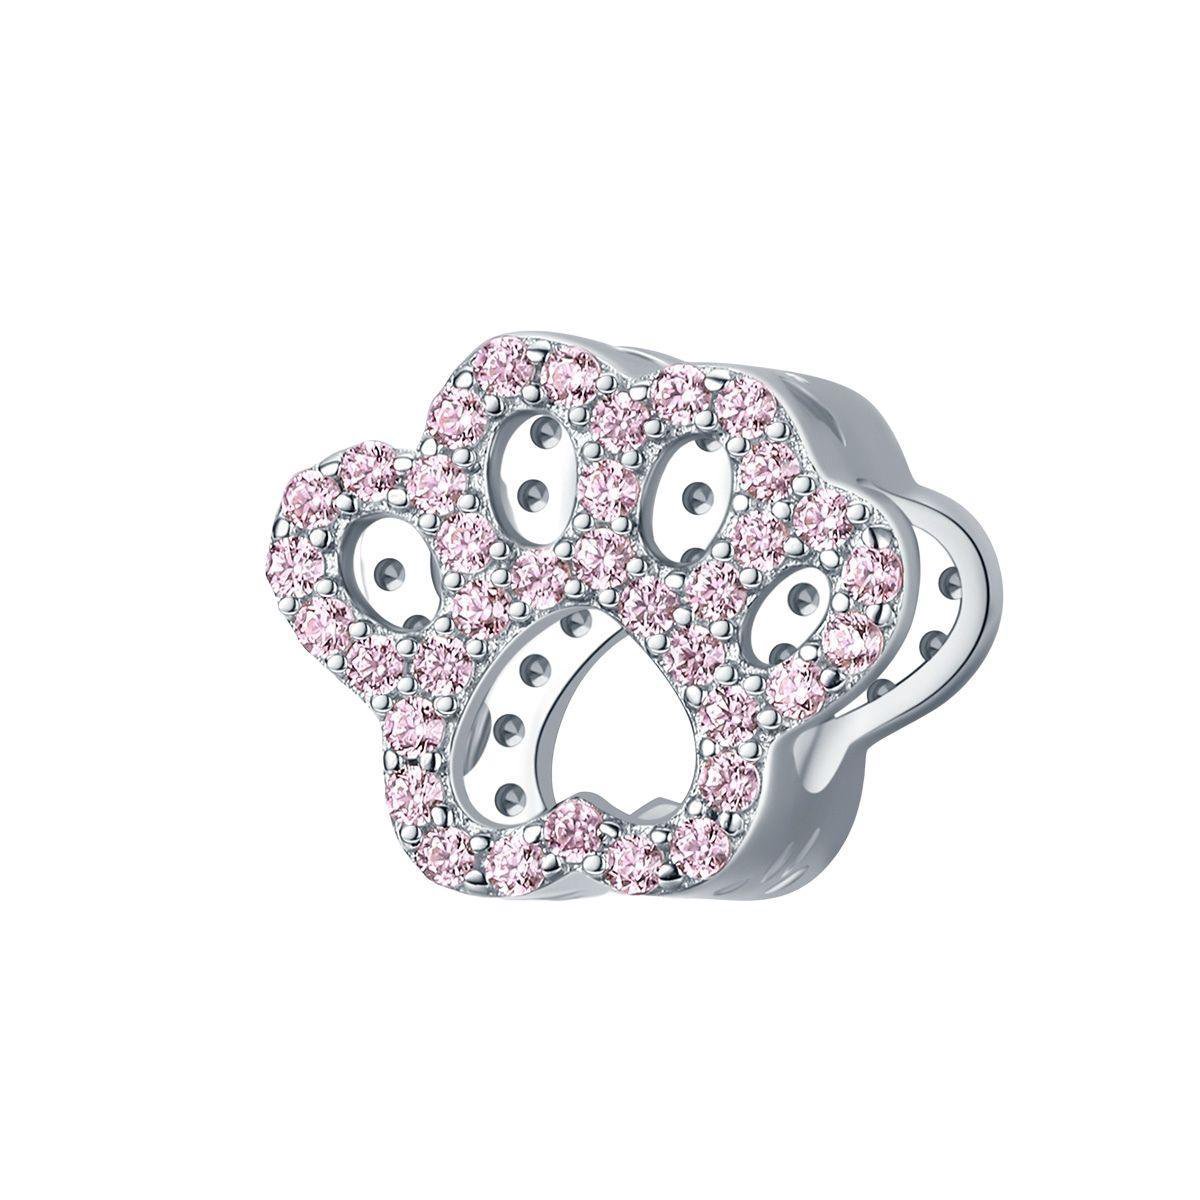 Poot hond beer roze zirkonia bedel | dog paw pink zirconia bead | Zilverana | geschikt voor Biagi , Pandora , Trollbeads armband | 925 zilver